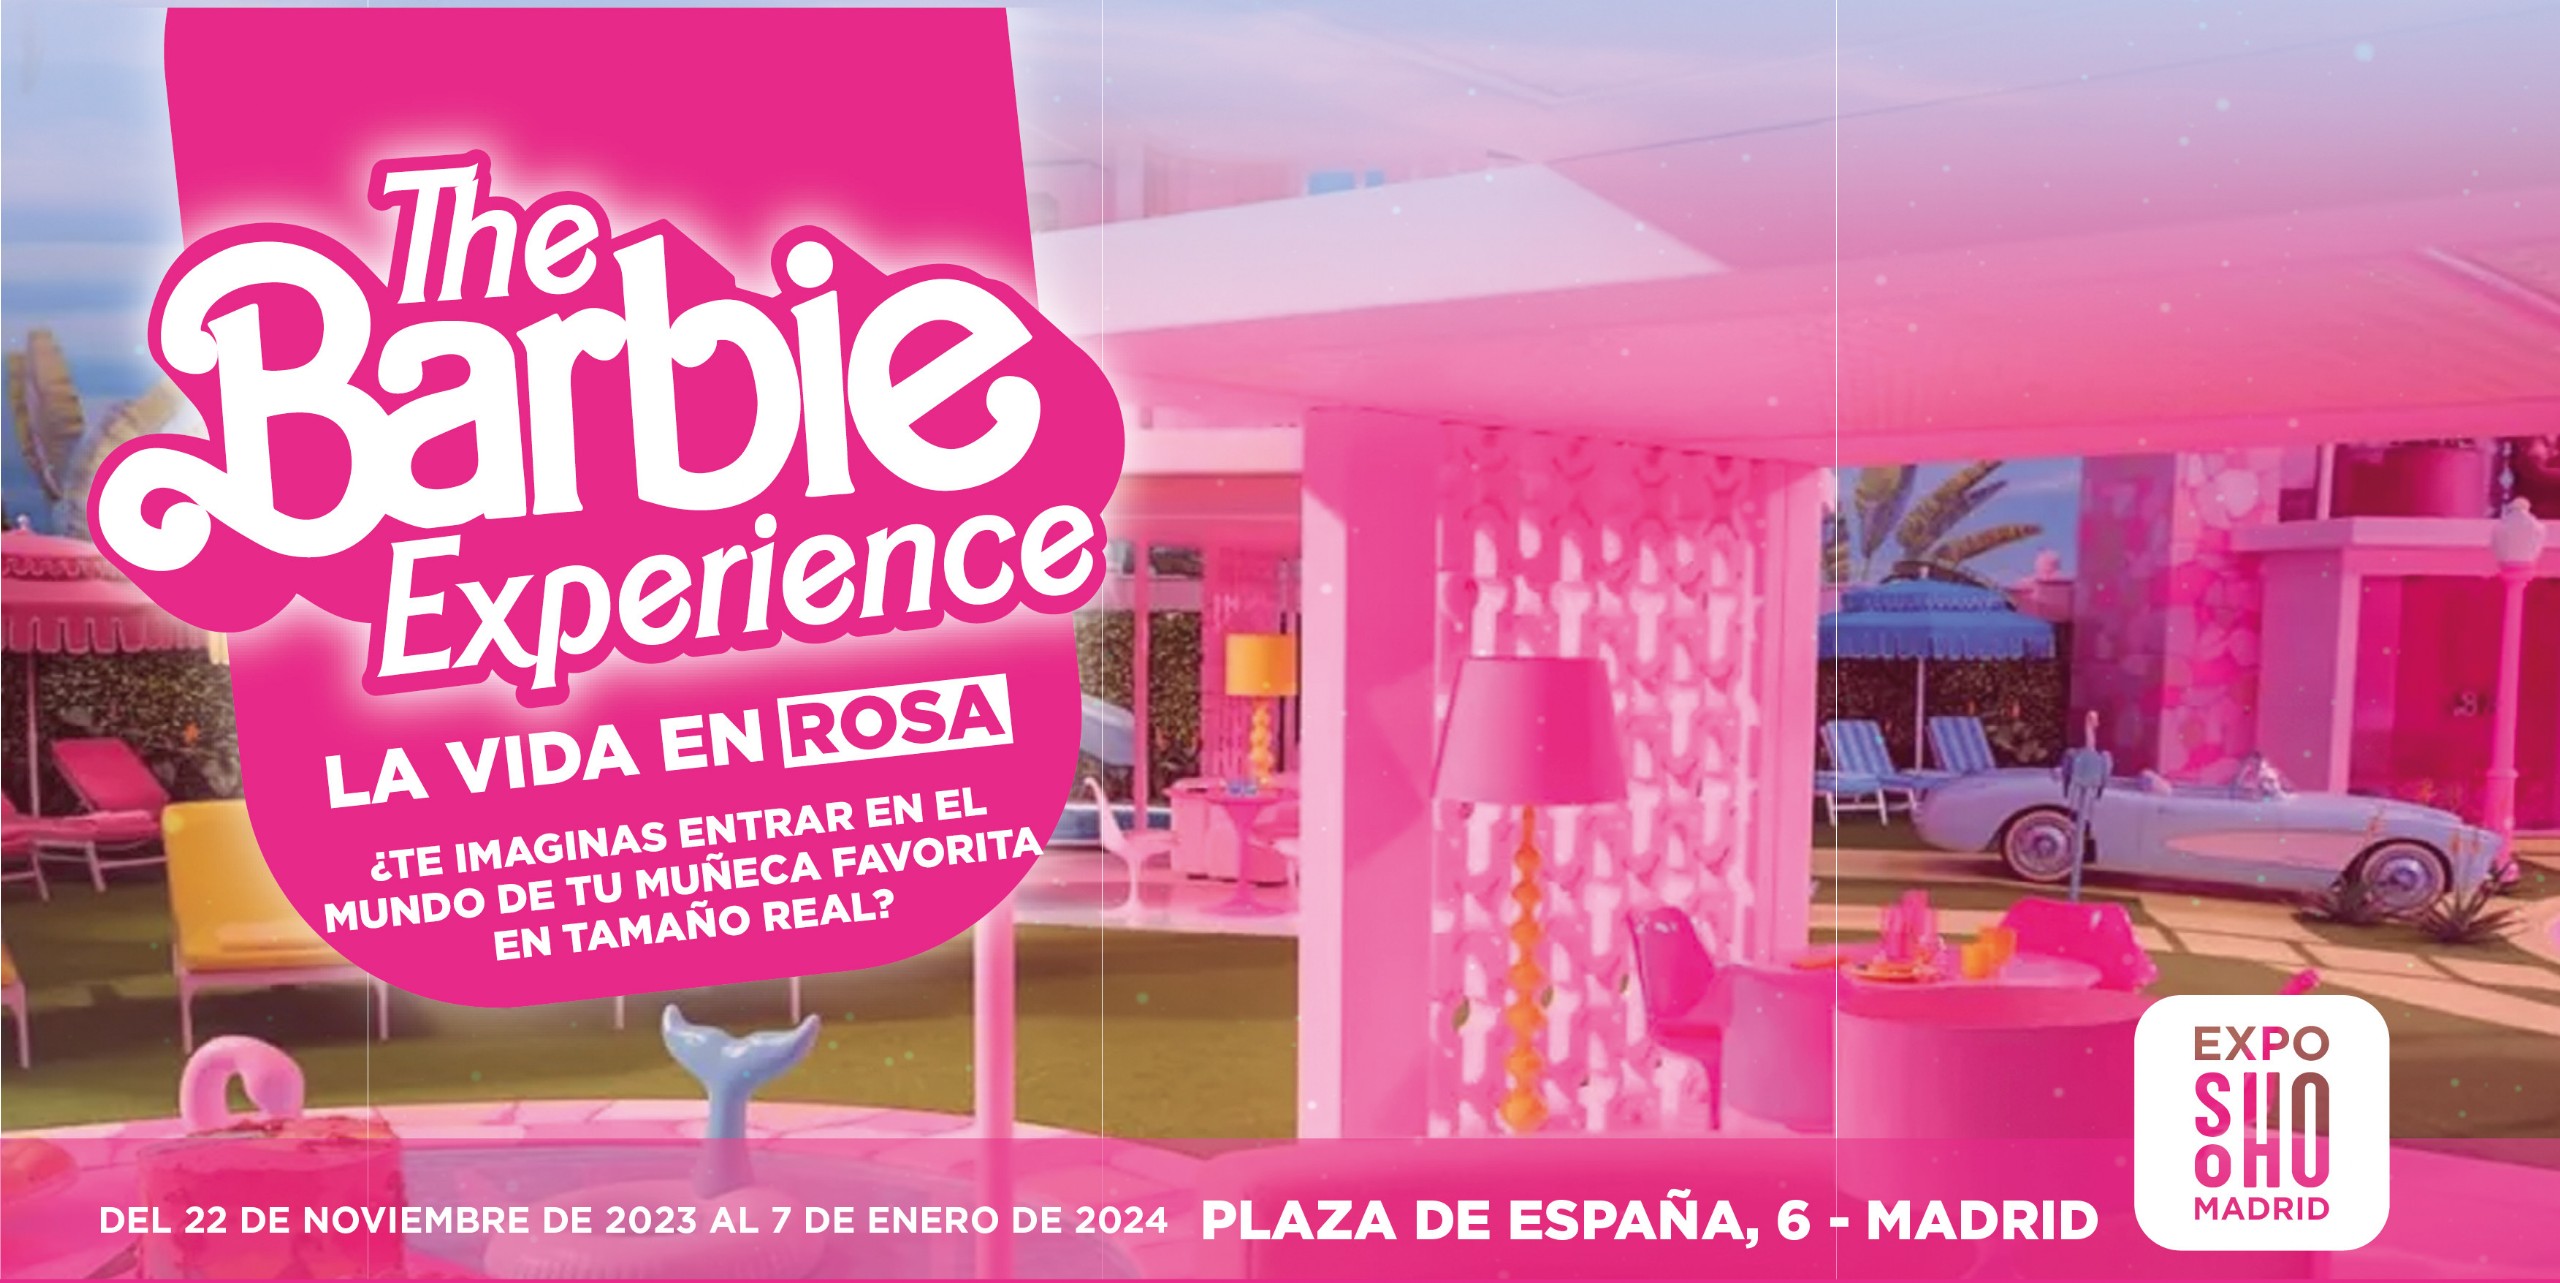 The Barbie experience - La vida en rosa